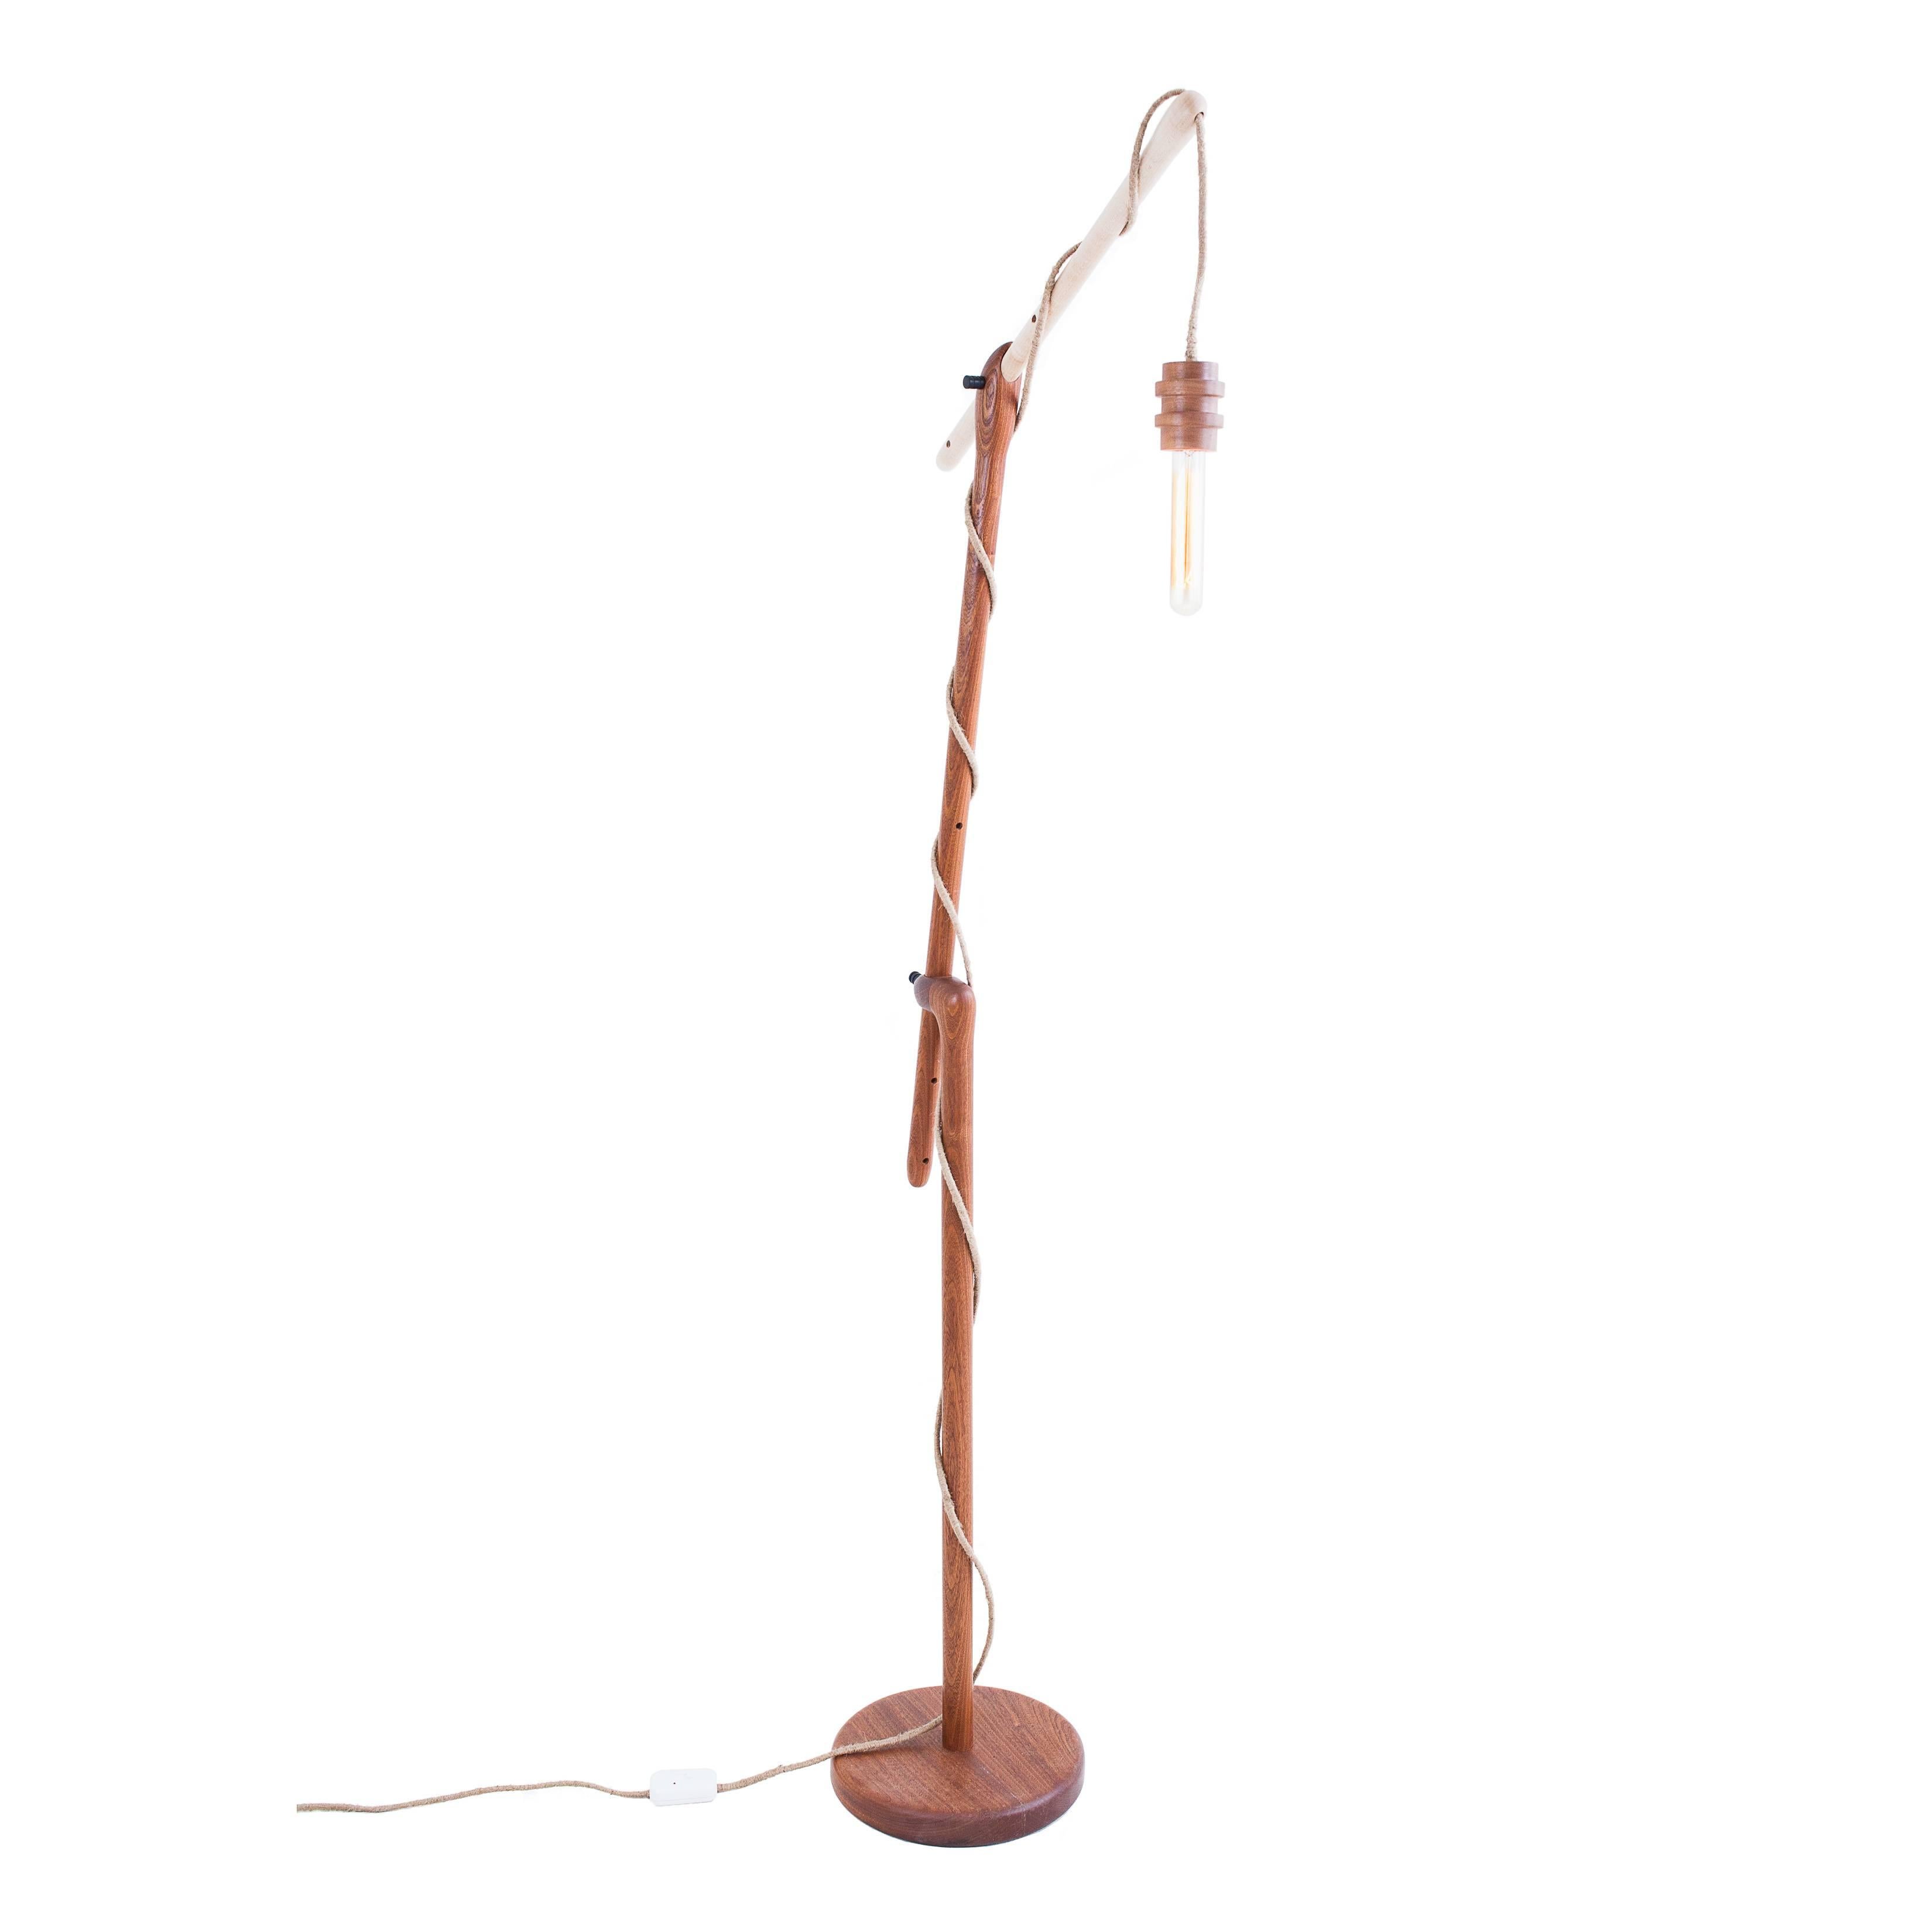 La Reading light est un lampadaire réglable avec un système tout en bois. Des broches en ébène tournées à la main permettent au lecteur de régler les bras à l'angle et à la hauteur souhaités. Cette lampe à suspension solide est dotée d'un boîtier